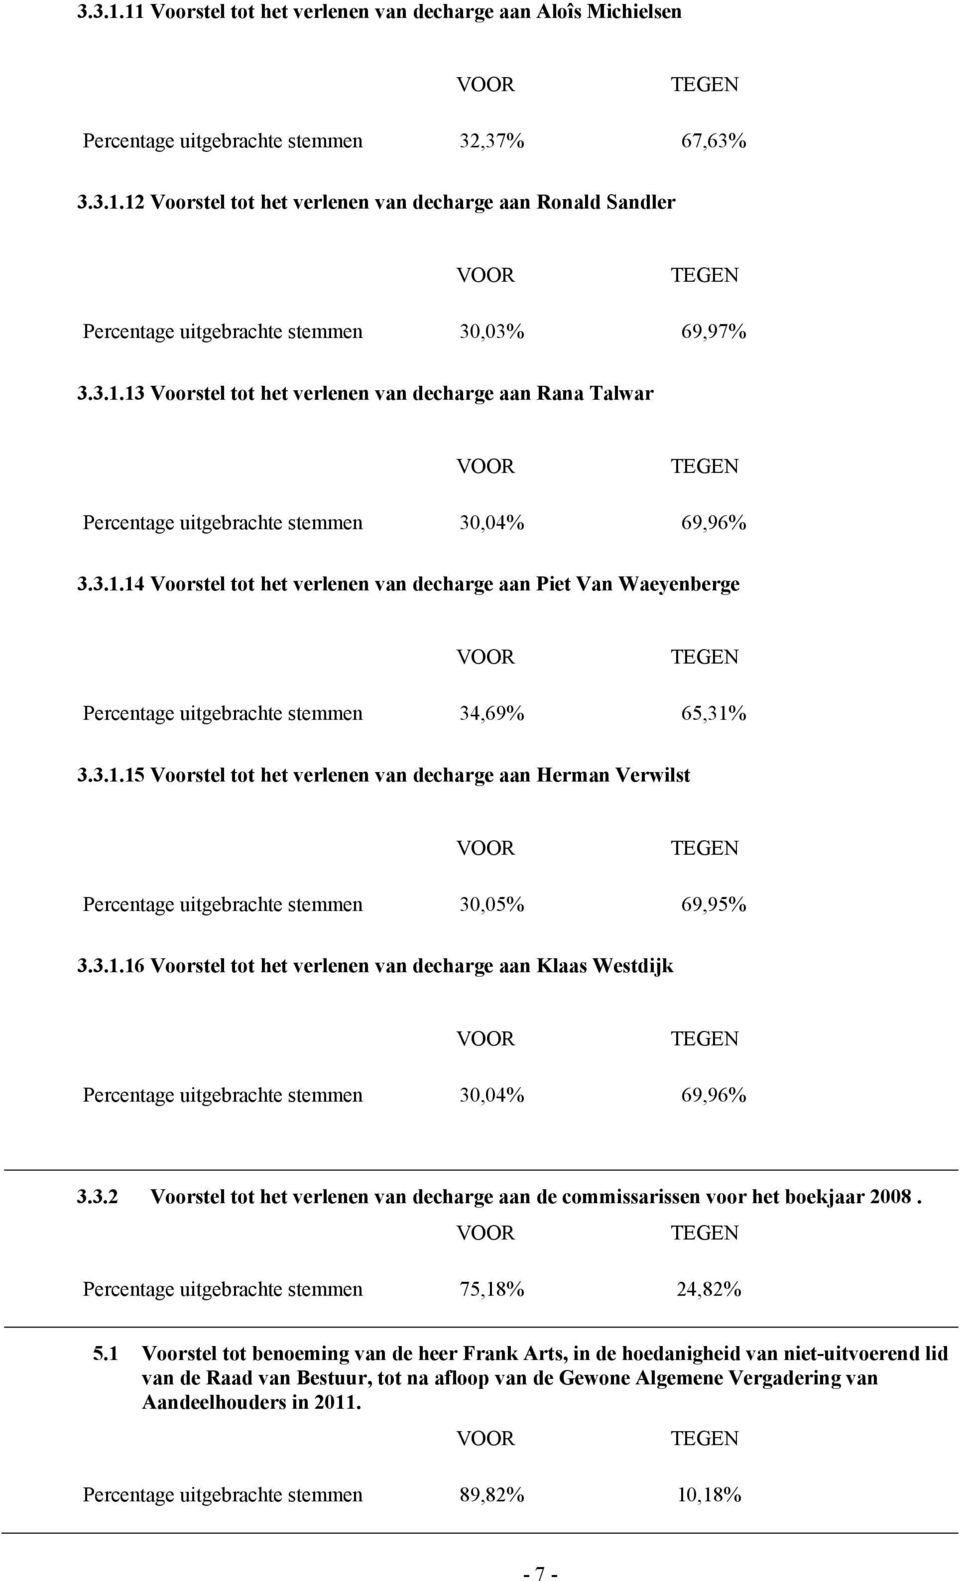 3.1.15 Voorstel tot het verlenen van decharge aan Herman Verwilst Percentage uitgebrachte stemmen 30,05% 69,95% 3.3.1.16 Voorstel tot het verlenen van decharge aan Klaas Westdijk Percentage uitgebrachte stemmen 30,04% 69,96% 3.